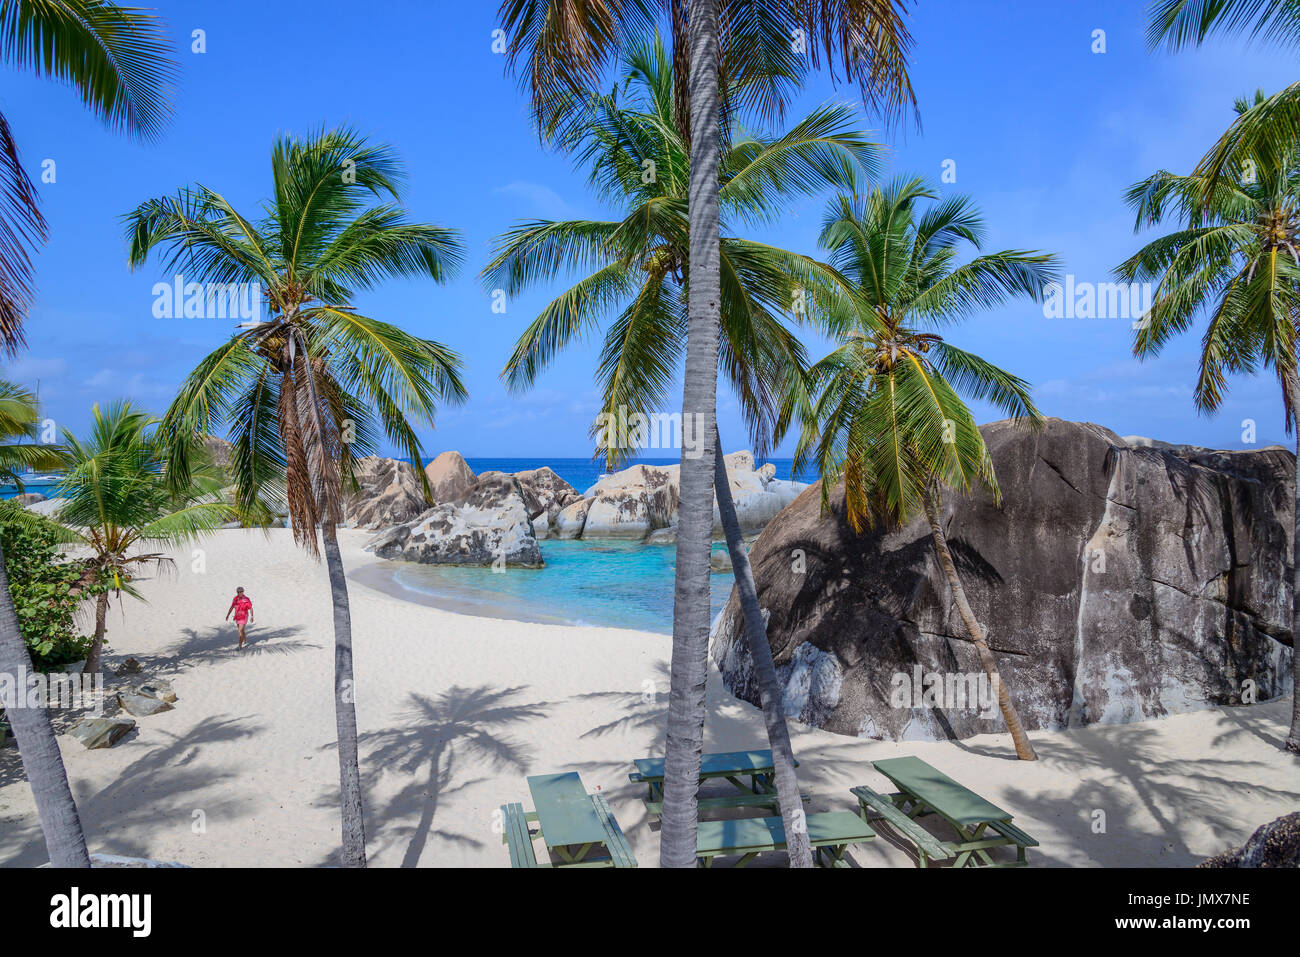 Alloggiamento molla con palme e boulder dai bagni, bagni, Molla Bay, Virgin Gorda Isola, Isole Vergini Britanniche, Mar dei Caraibi Foto Stock